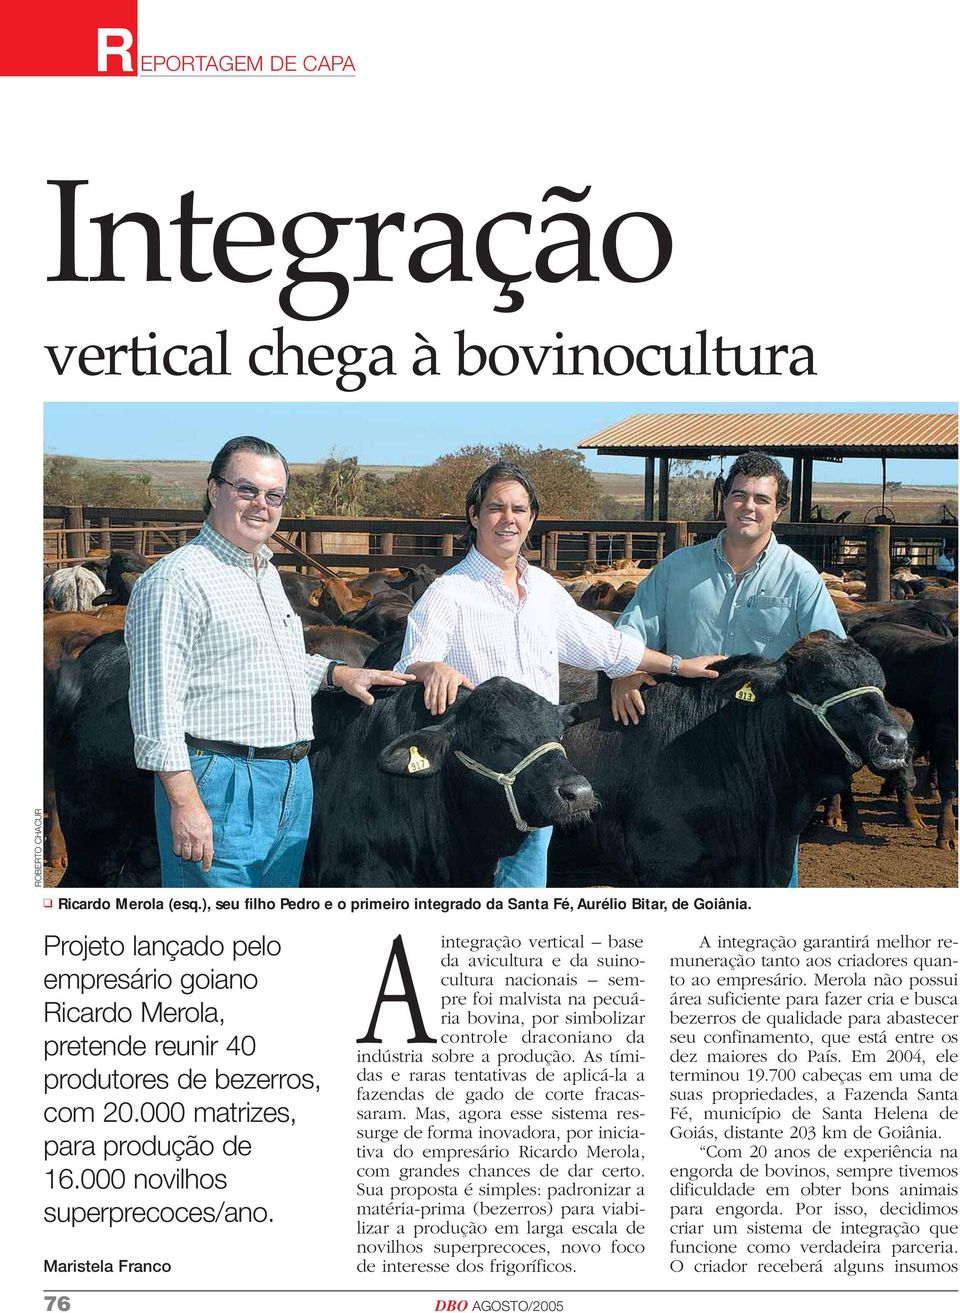 Maristela Franco Aintegração vertical base da avicultura e da suinocultura nacionais sempre foi malvista na pecuária bovina, por simbolizar controle draconiano da indústria sobre a produção.